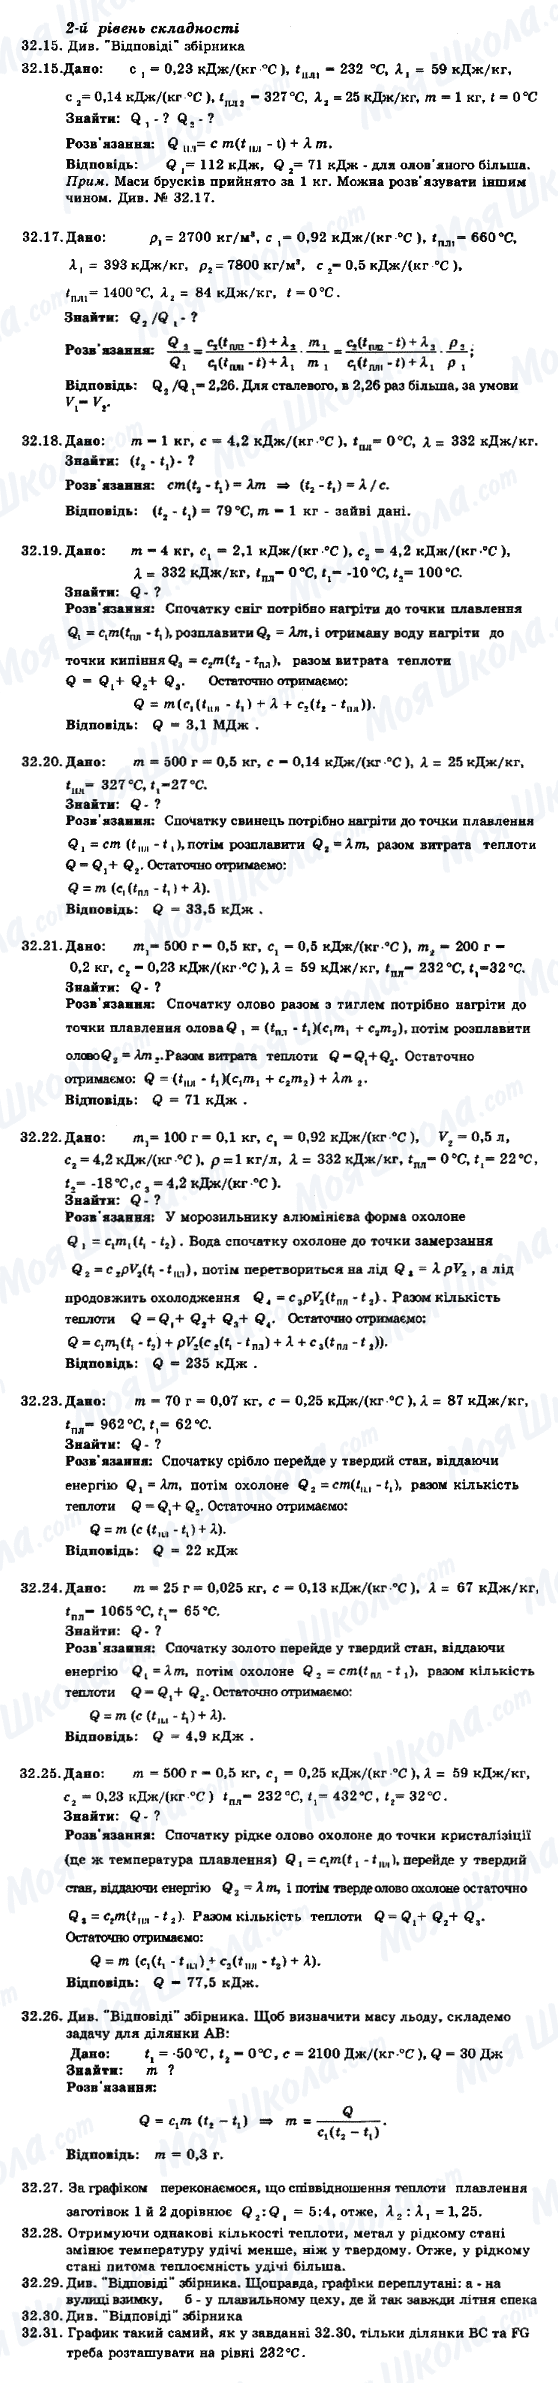 ГДЗ Физика 8 класс страница 32.15-32.31